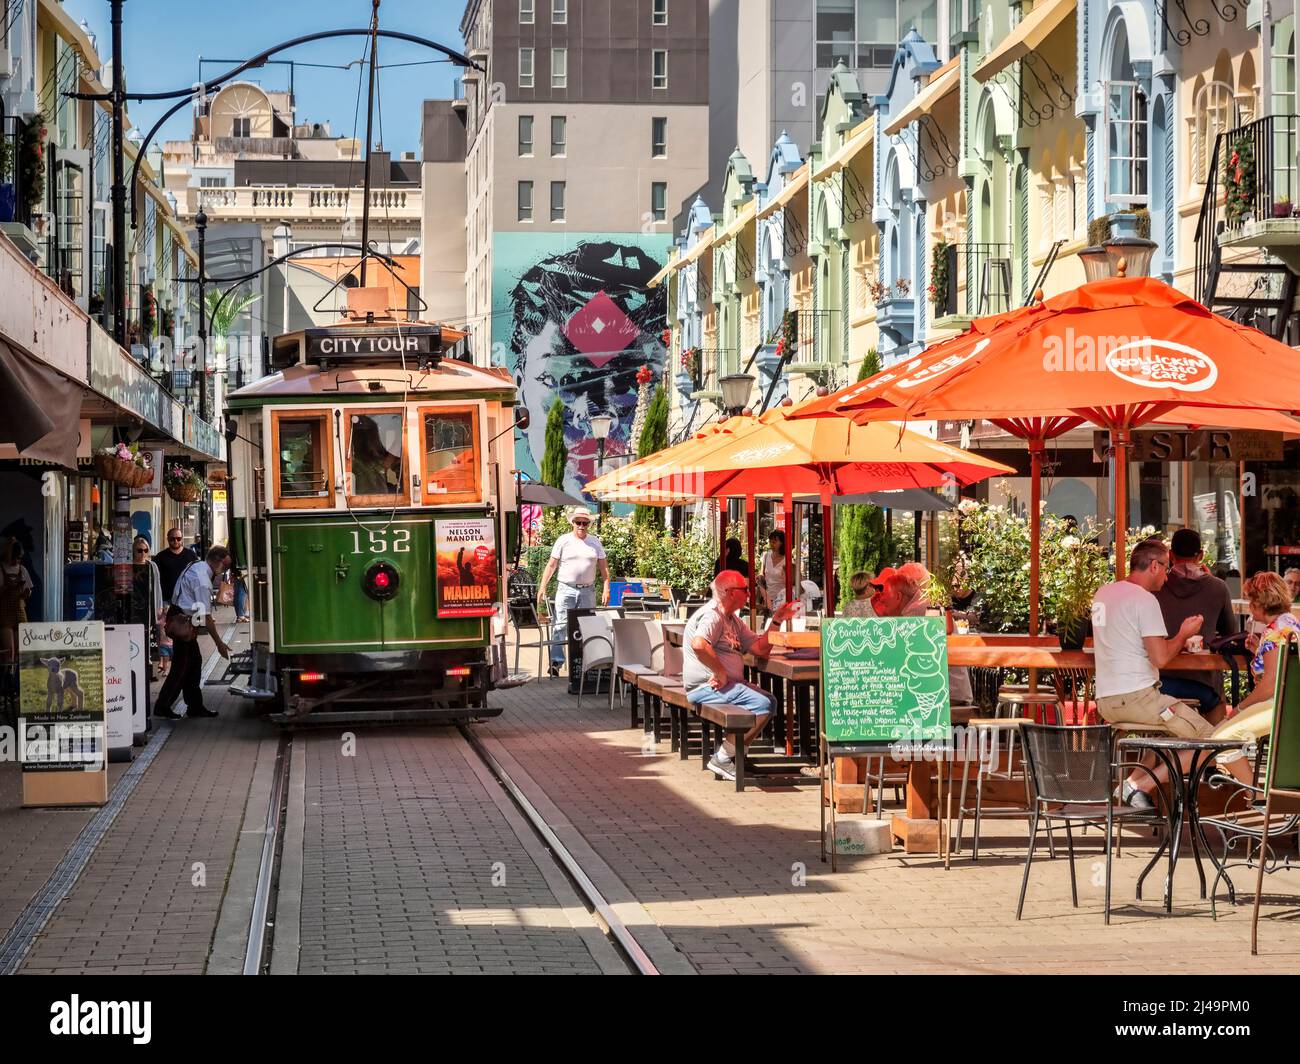 3 gennaio 2019: Christchurch, Nuova Zelanda - Regent Street nel centro di Christchurch, con caffè all'aperto e negozi di specialità e i tram rou Foto Stock